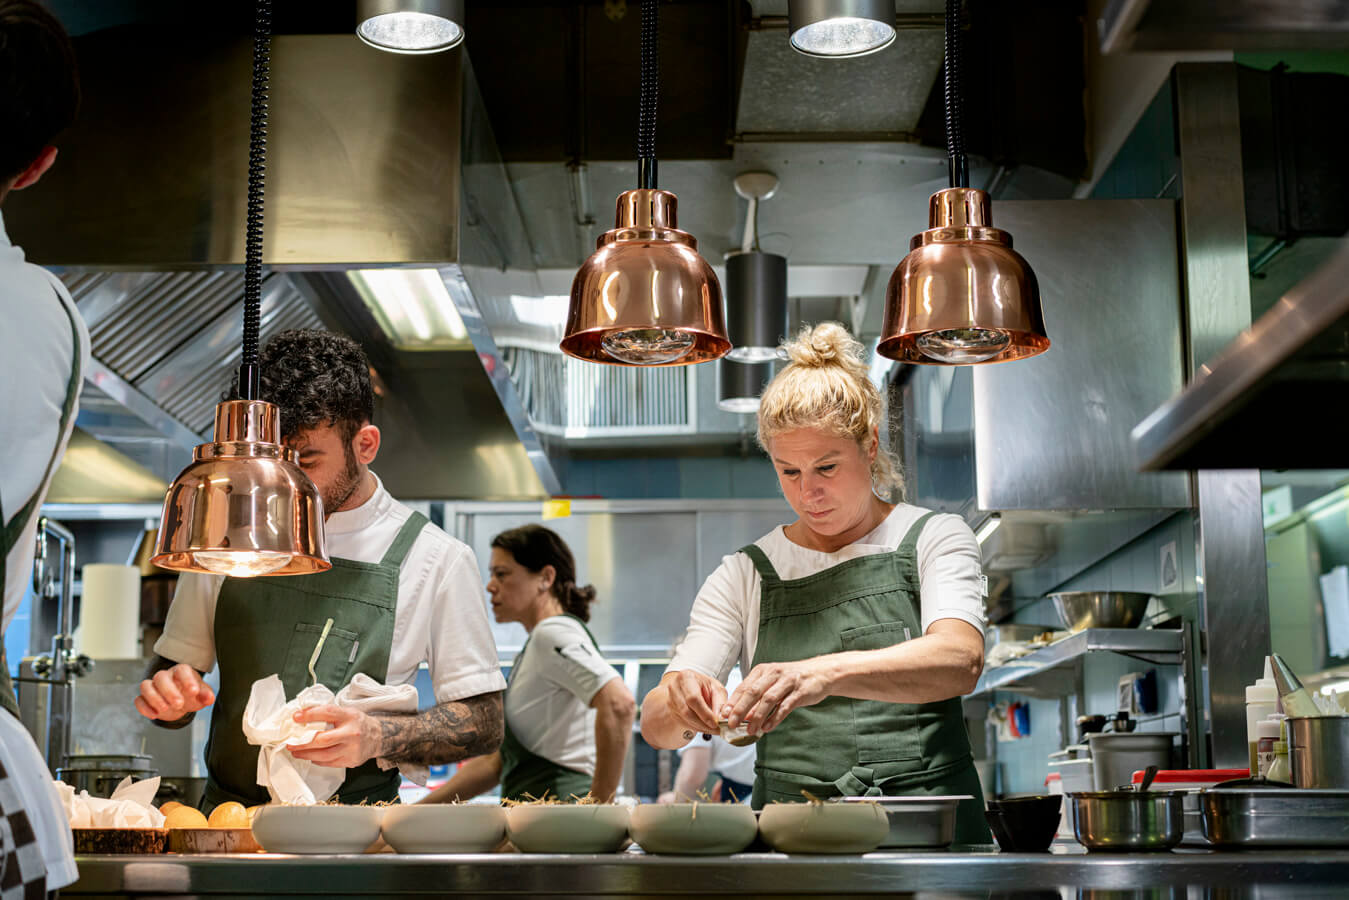 Beste vrouwelijke chef ter wereld Ana Ros, Hisa Franko – Culinaire vakantie Slovenie, Europese Regio van de Gastronomie 2021 | Mira Tours – Reisbureau Haacht